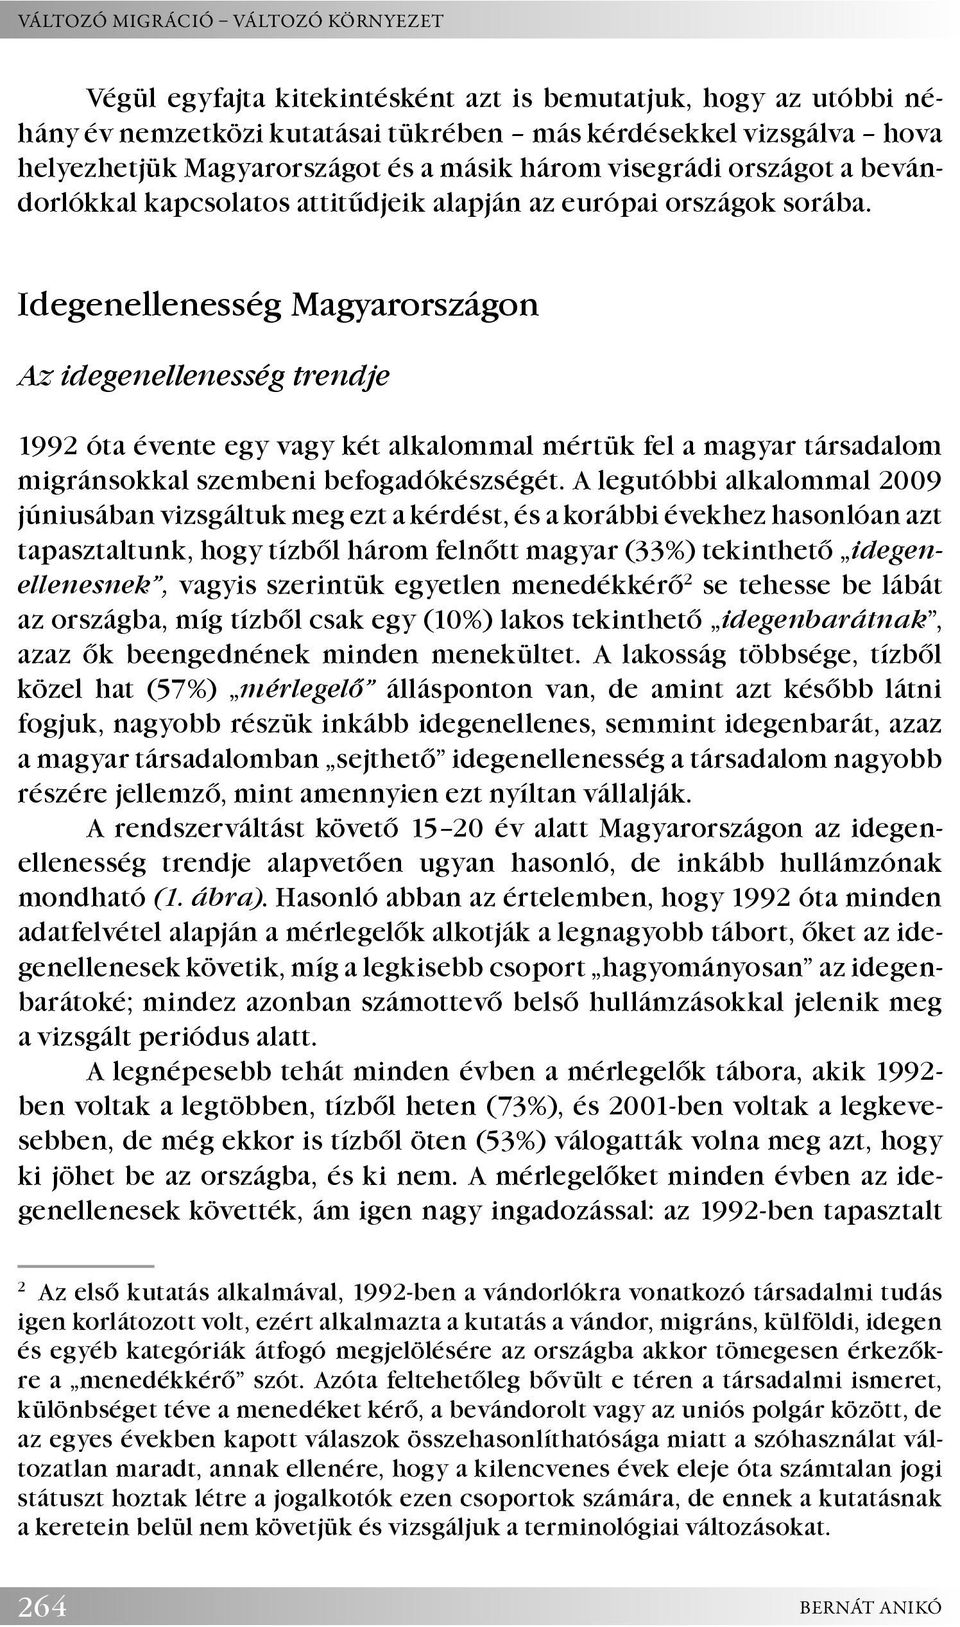 Idegenellenesség Magyarországon Az idegenellenesség trendje 1992 óta évente egy vagy két alkalommal mértük fel a magyar társadalom migránsokkal szembeni befogadókészségét.